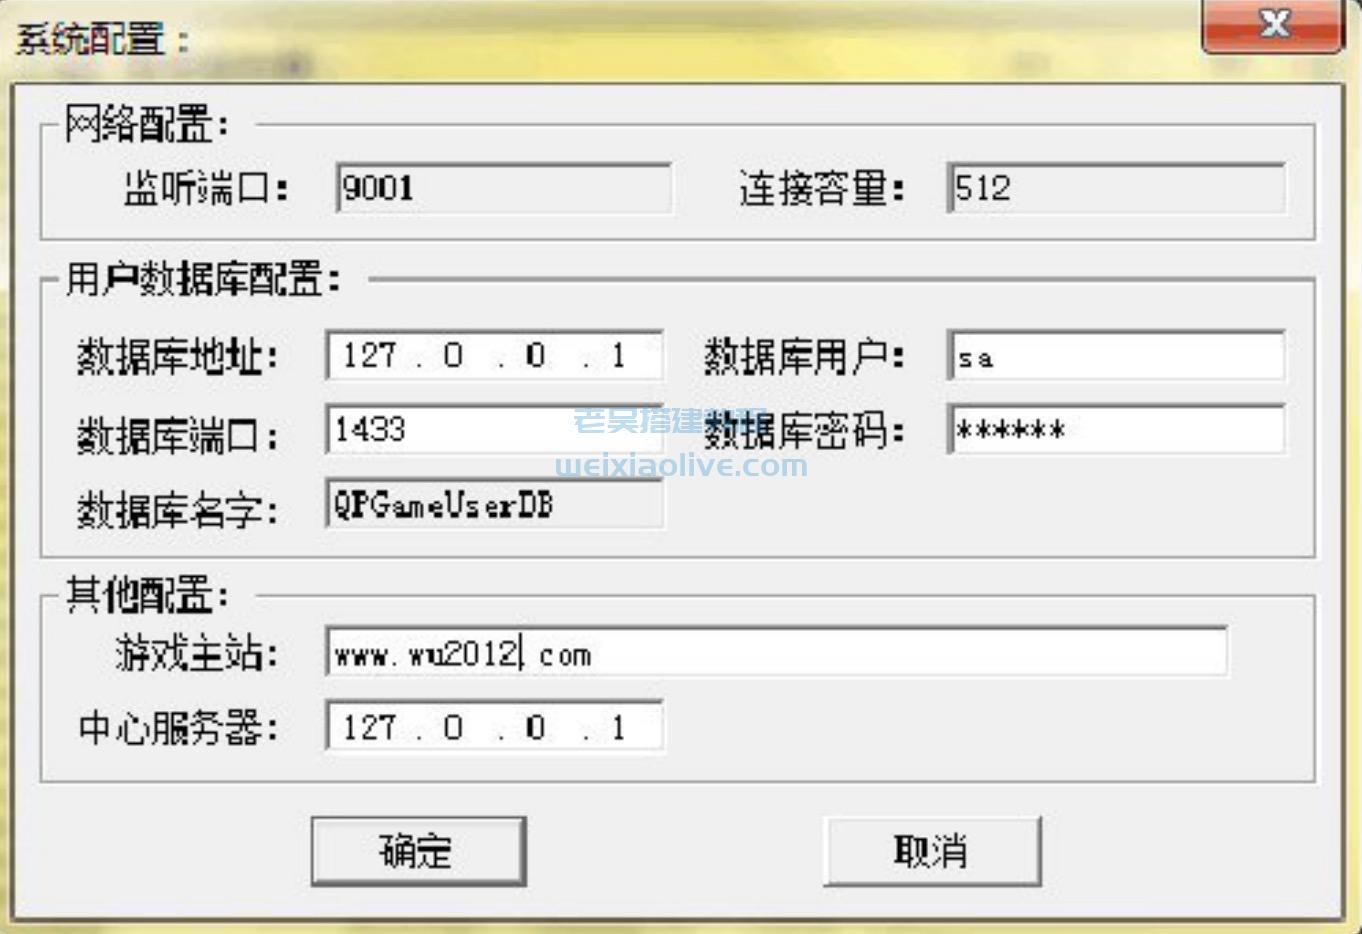 网狐源码6.6.1.0升级编程手册  第18张